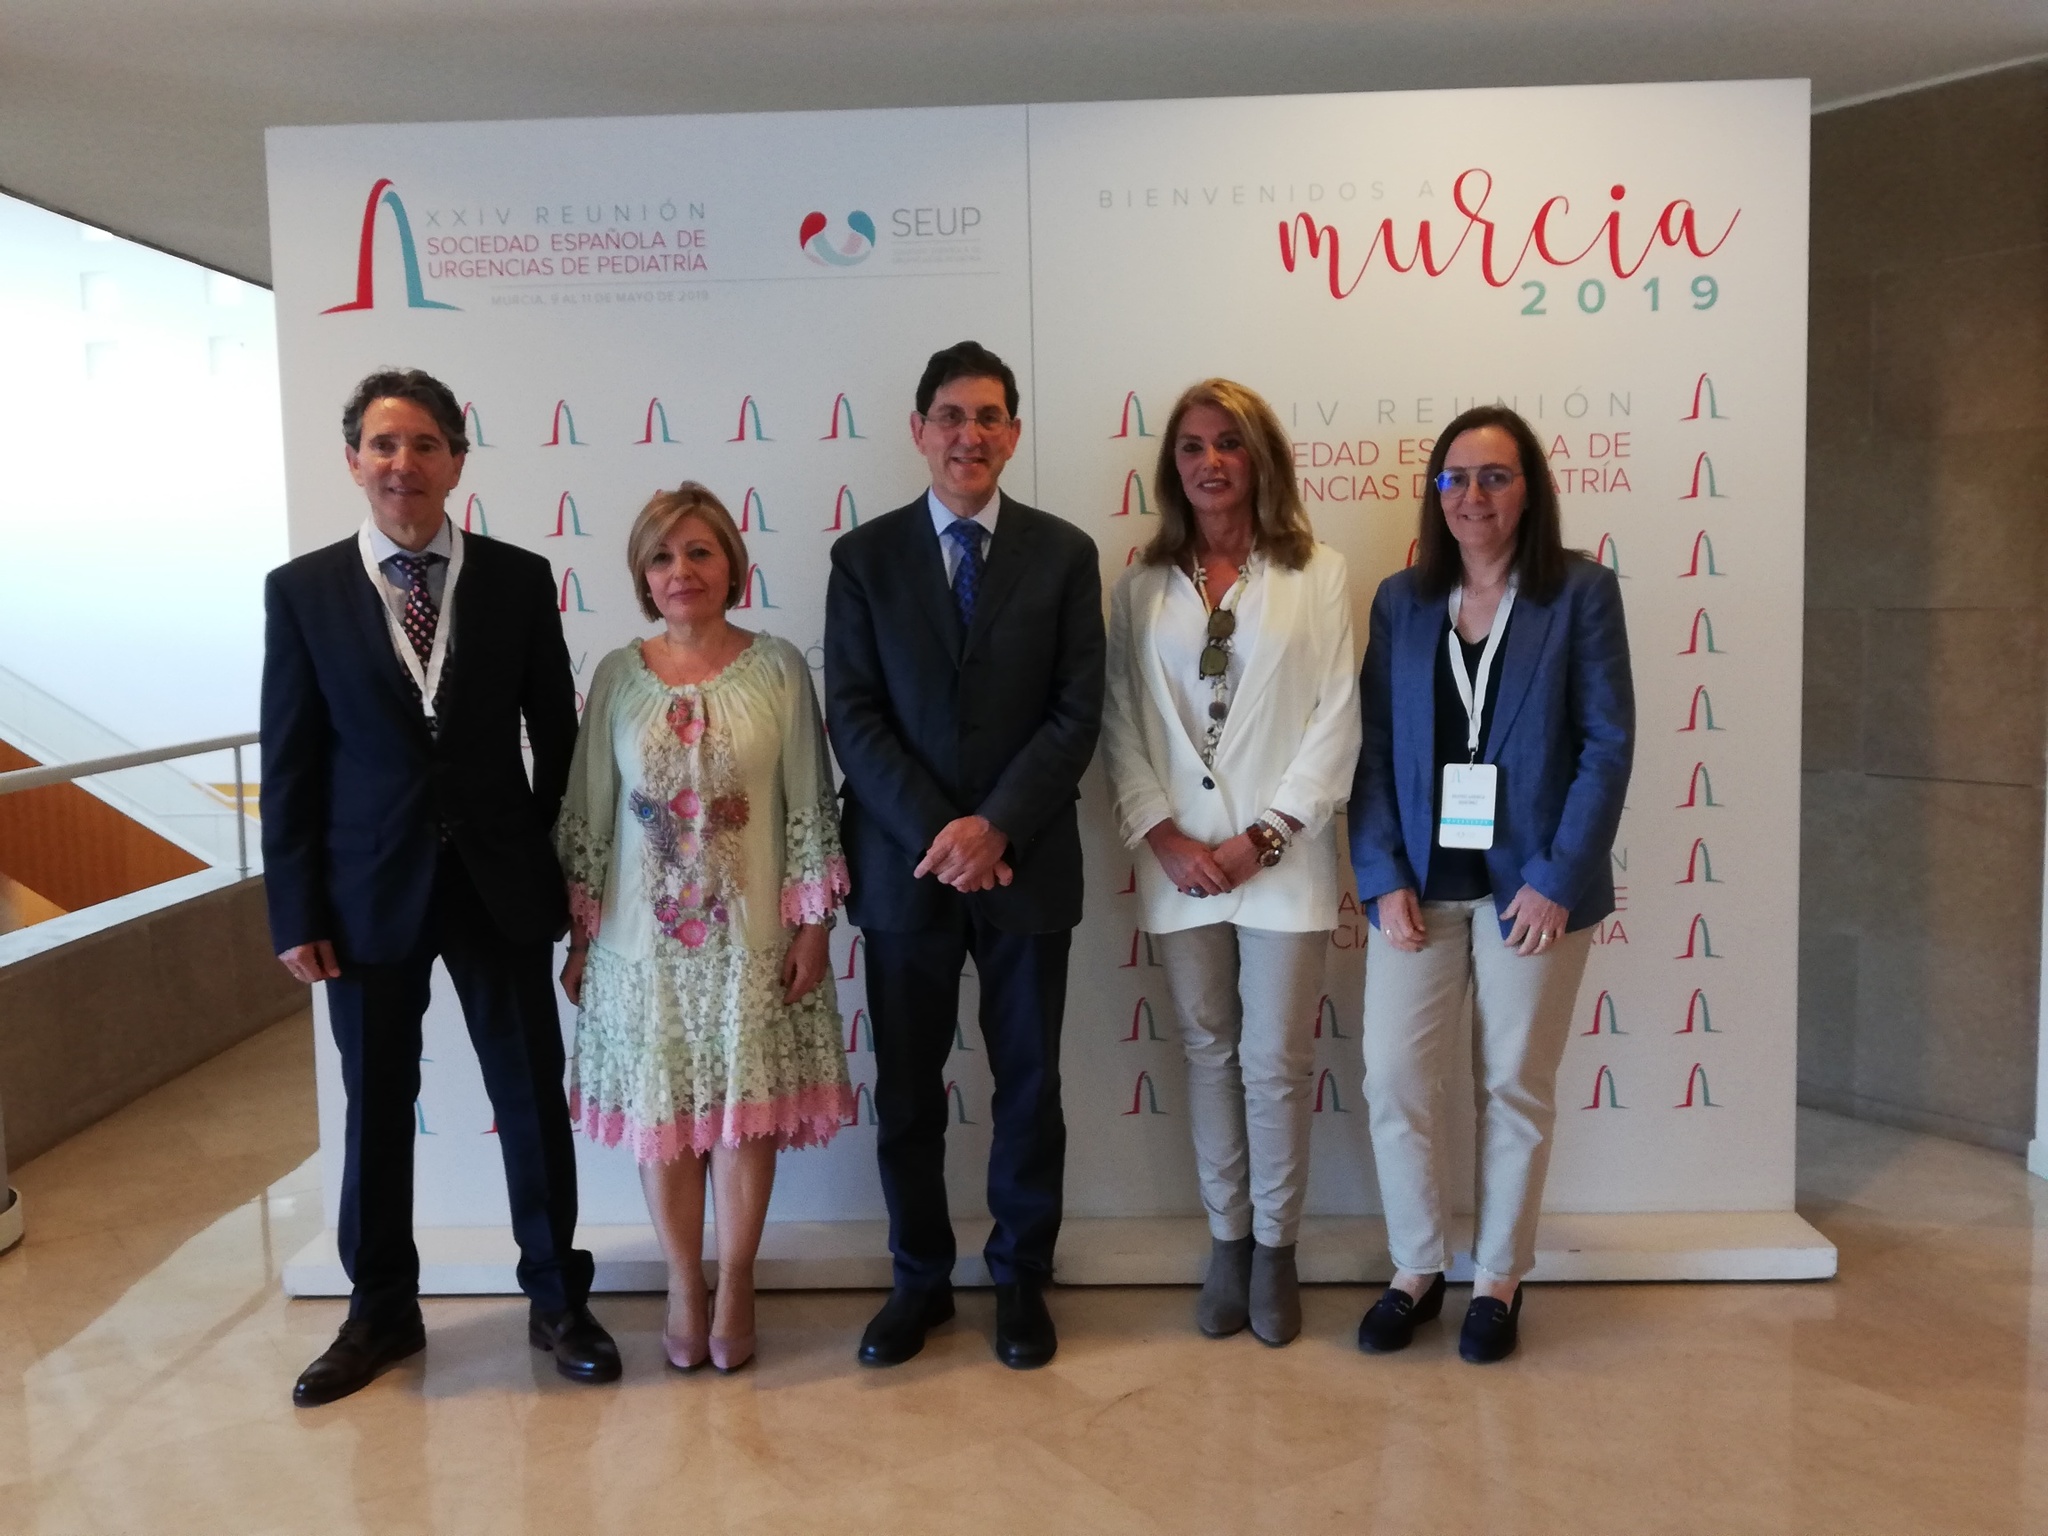 Inauguración de la reunión anual de la Sociedad Española de Urgencias Pediátricas